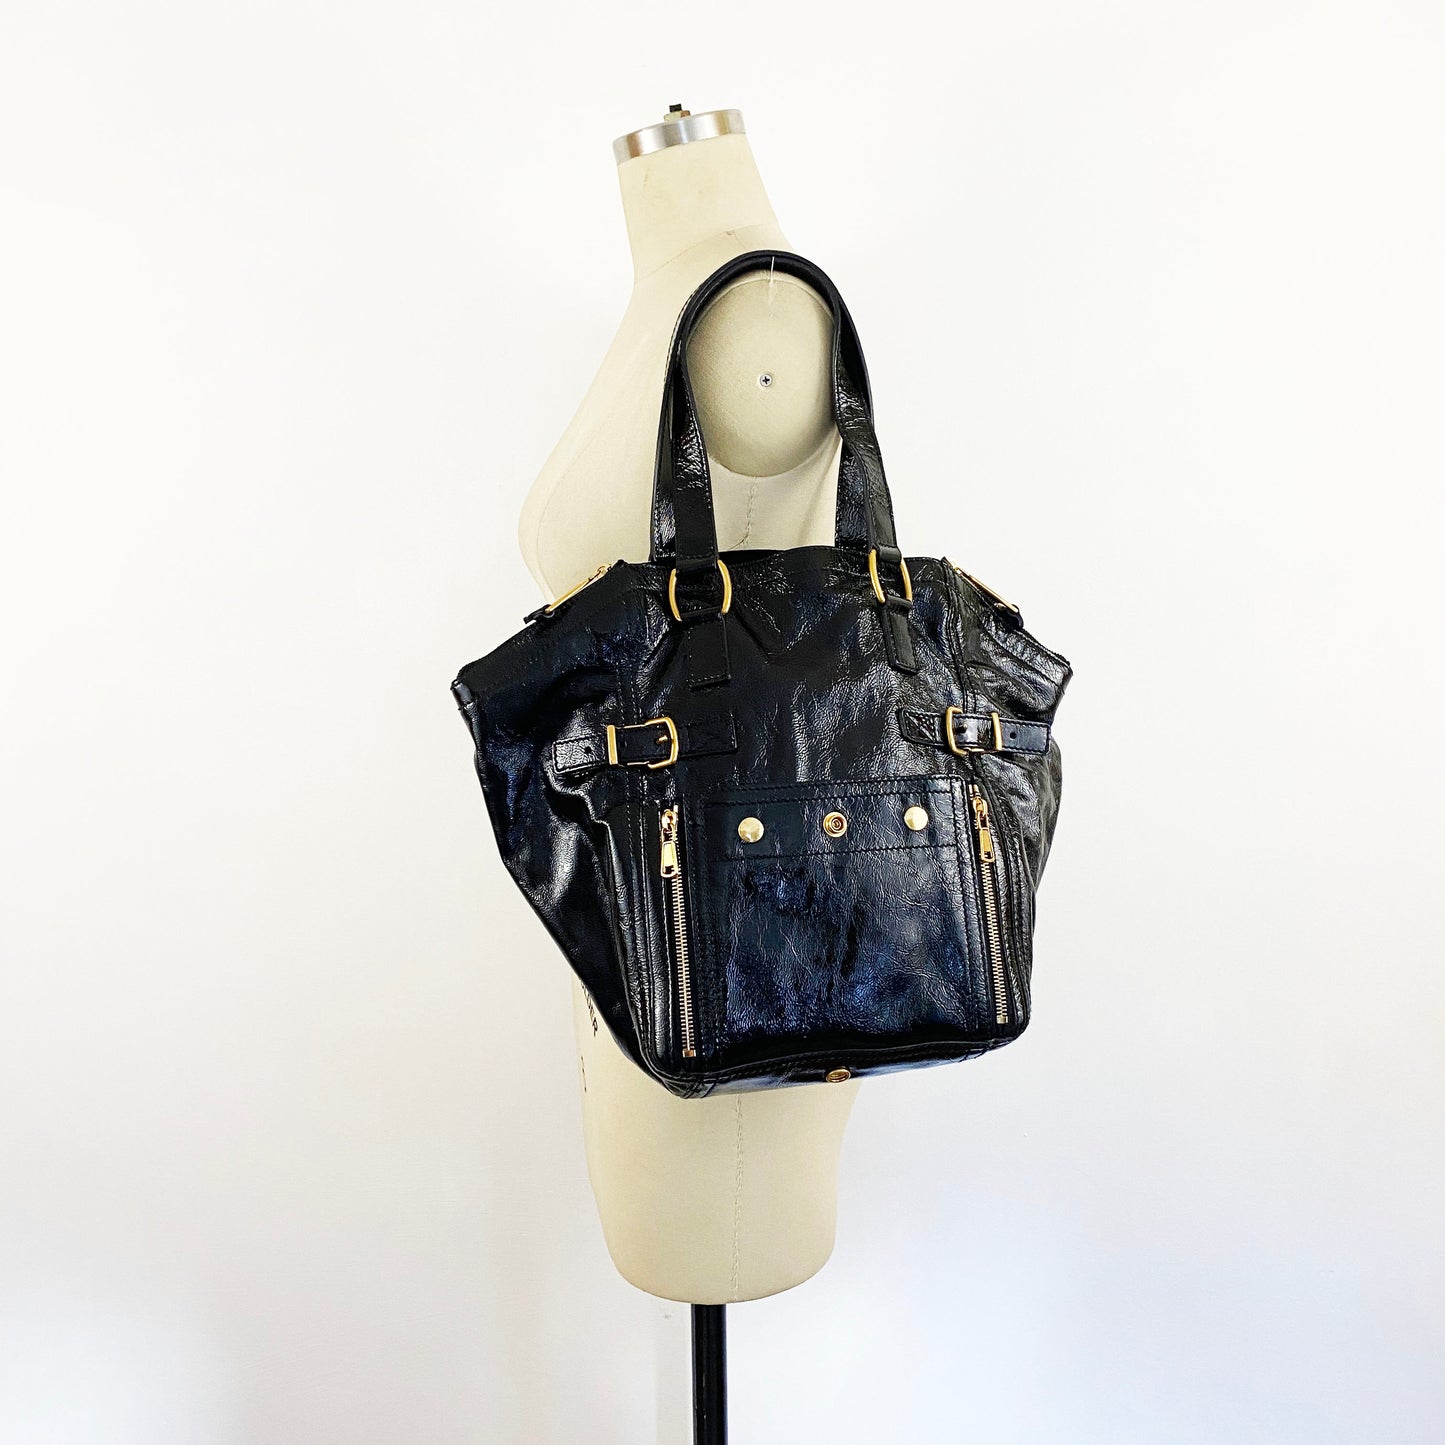 2008 Yves Saint Laurent Rive Gauche Downtown Bag Black Patent Leather Tote YSL Vintage Purse